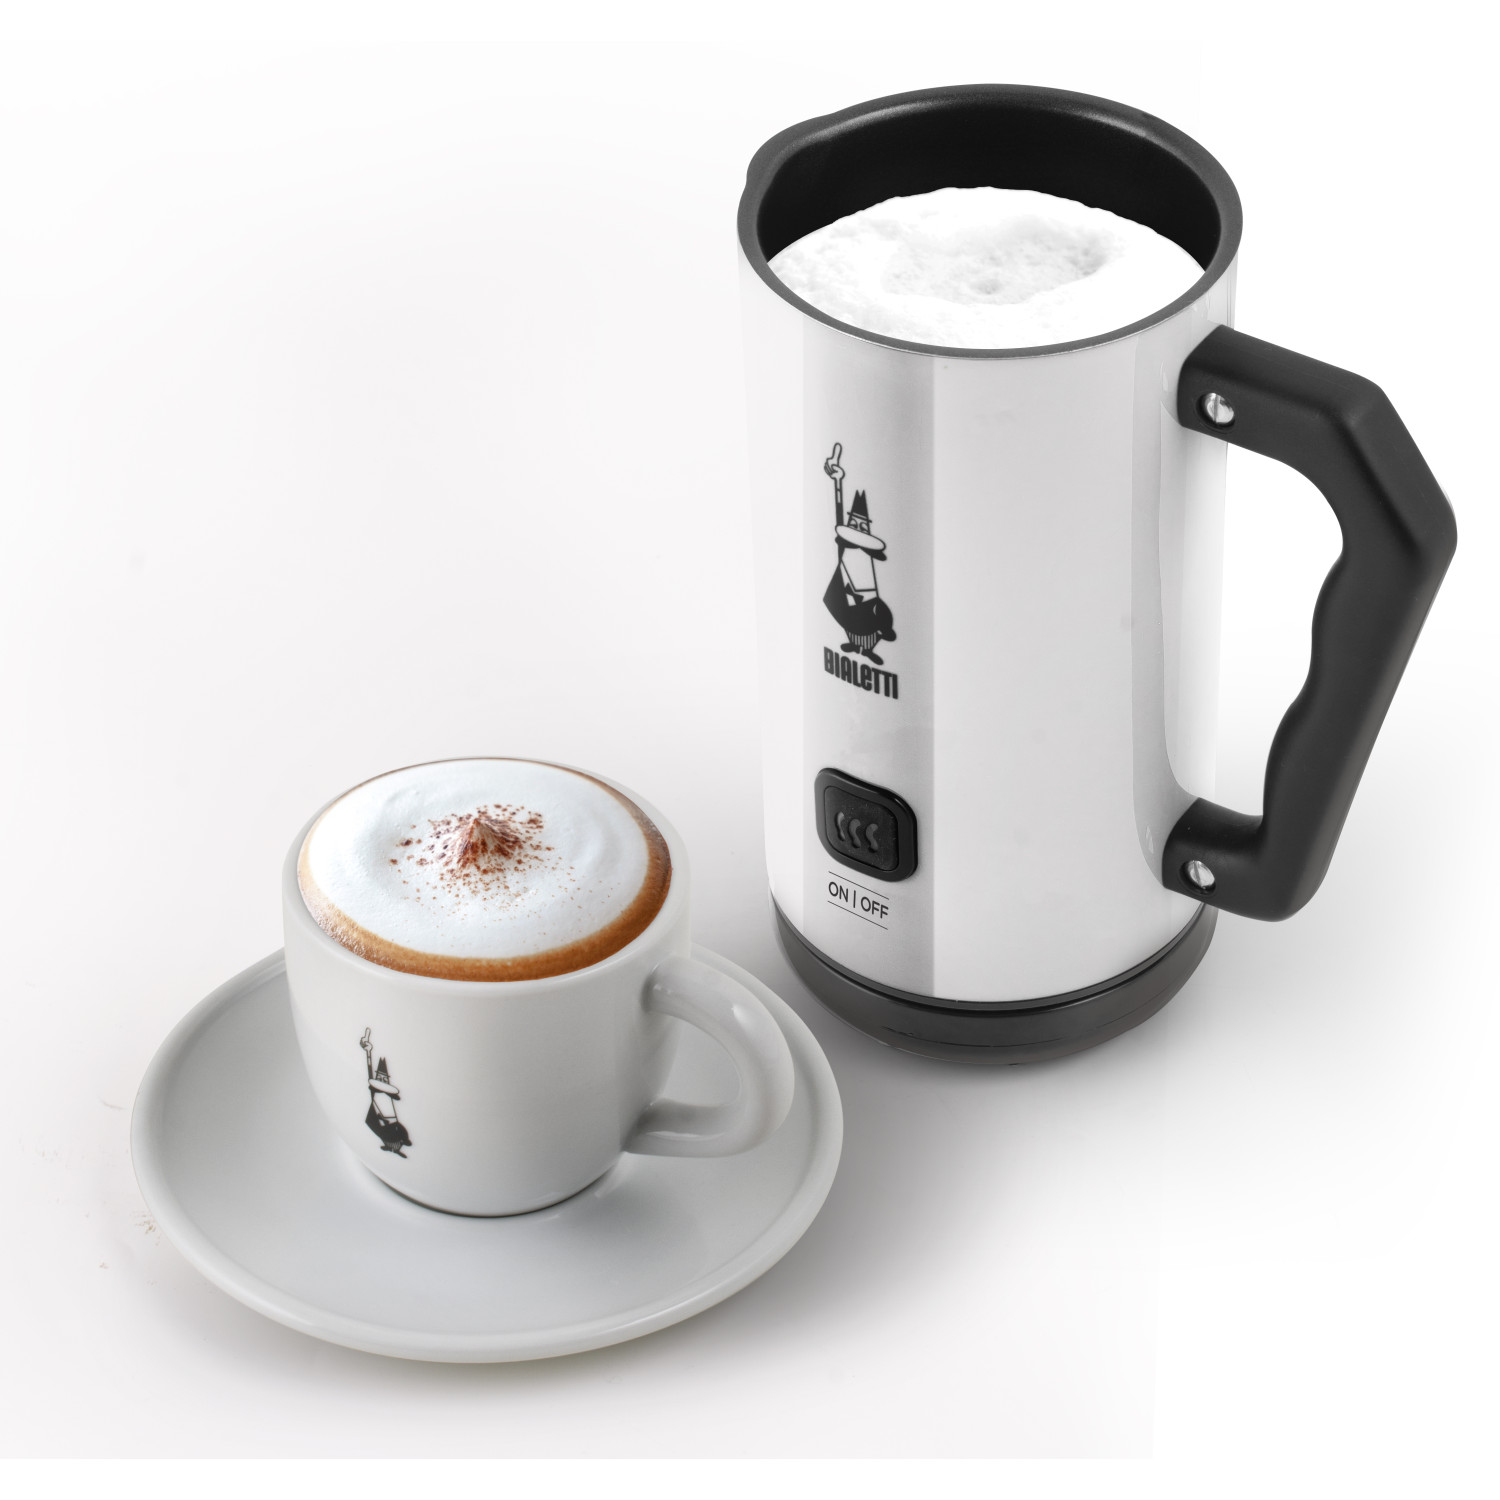 MK02 Espressokocher Elettric BIALETTI Milk Weiß/Schwarz Frother